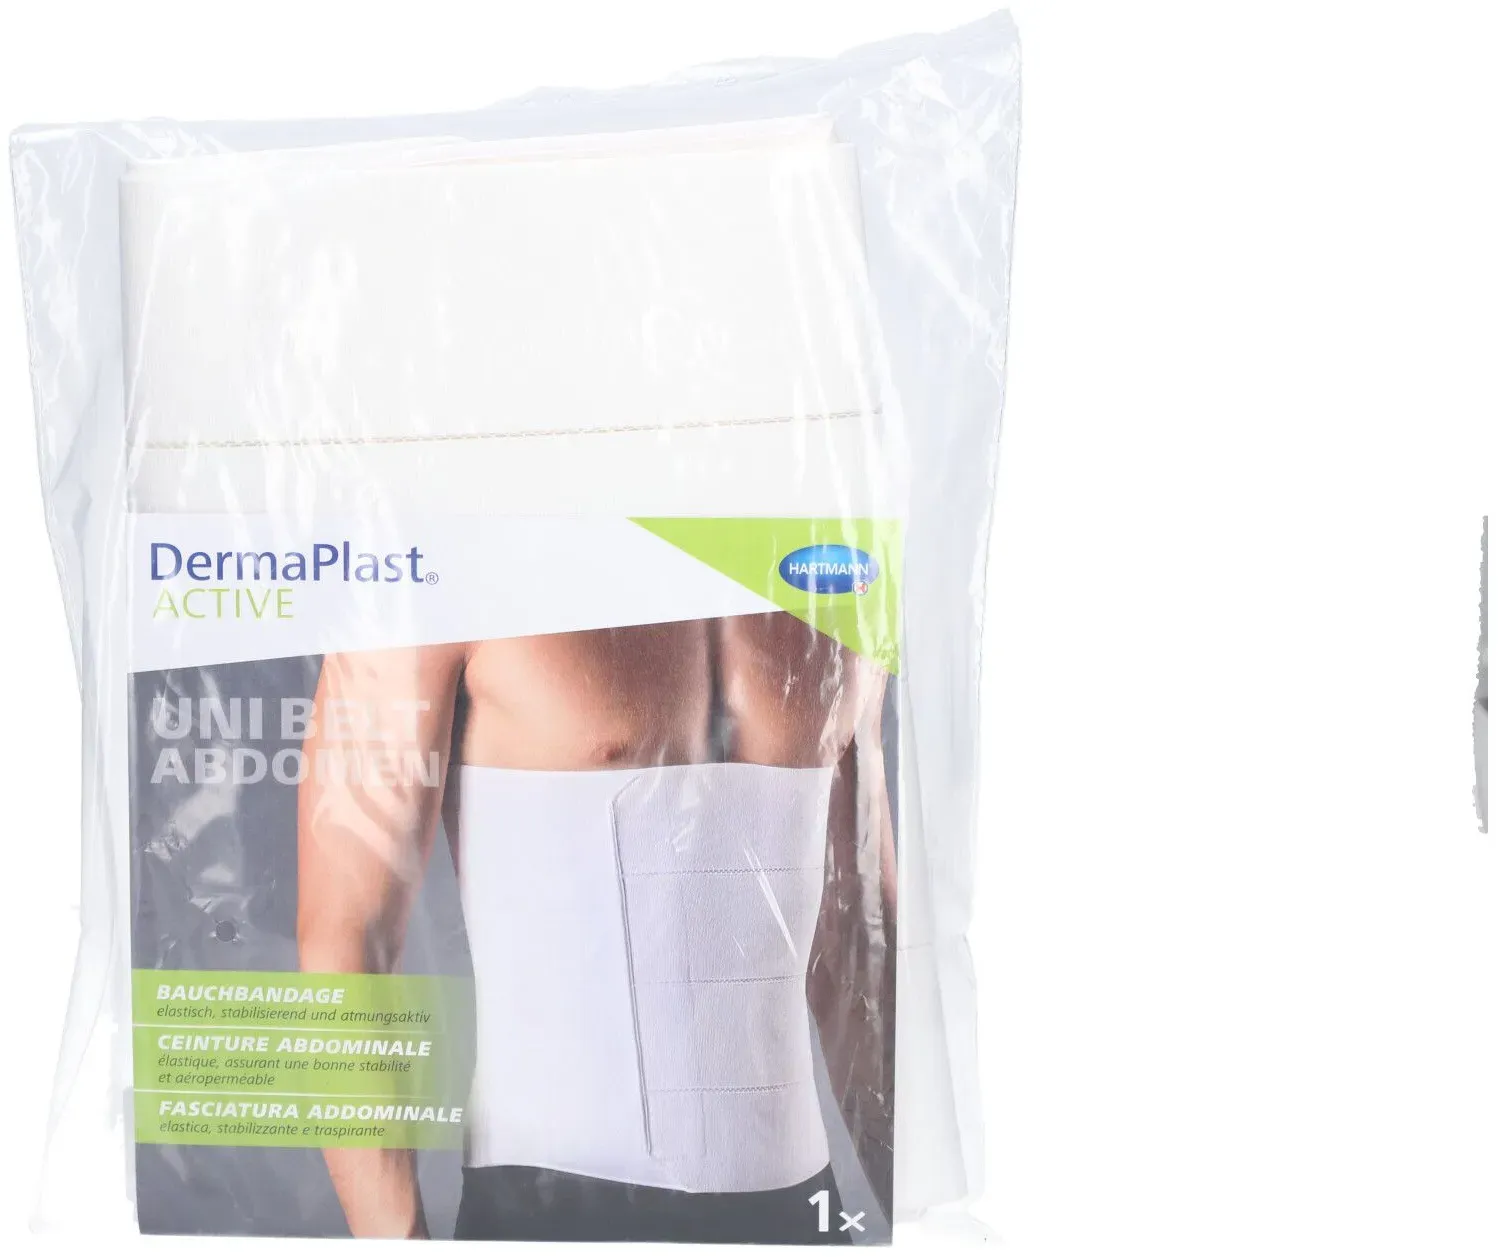 Hartmann Dermaplast® Active Unibelt Abdomen Ceinture abdominale Taille 3 105-130 cm groß